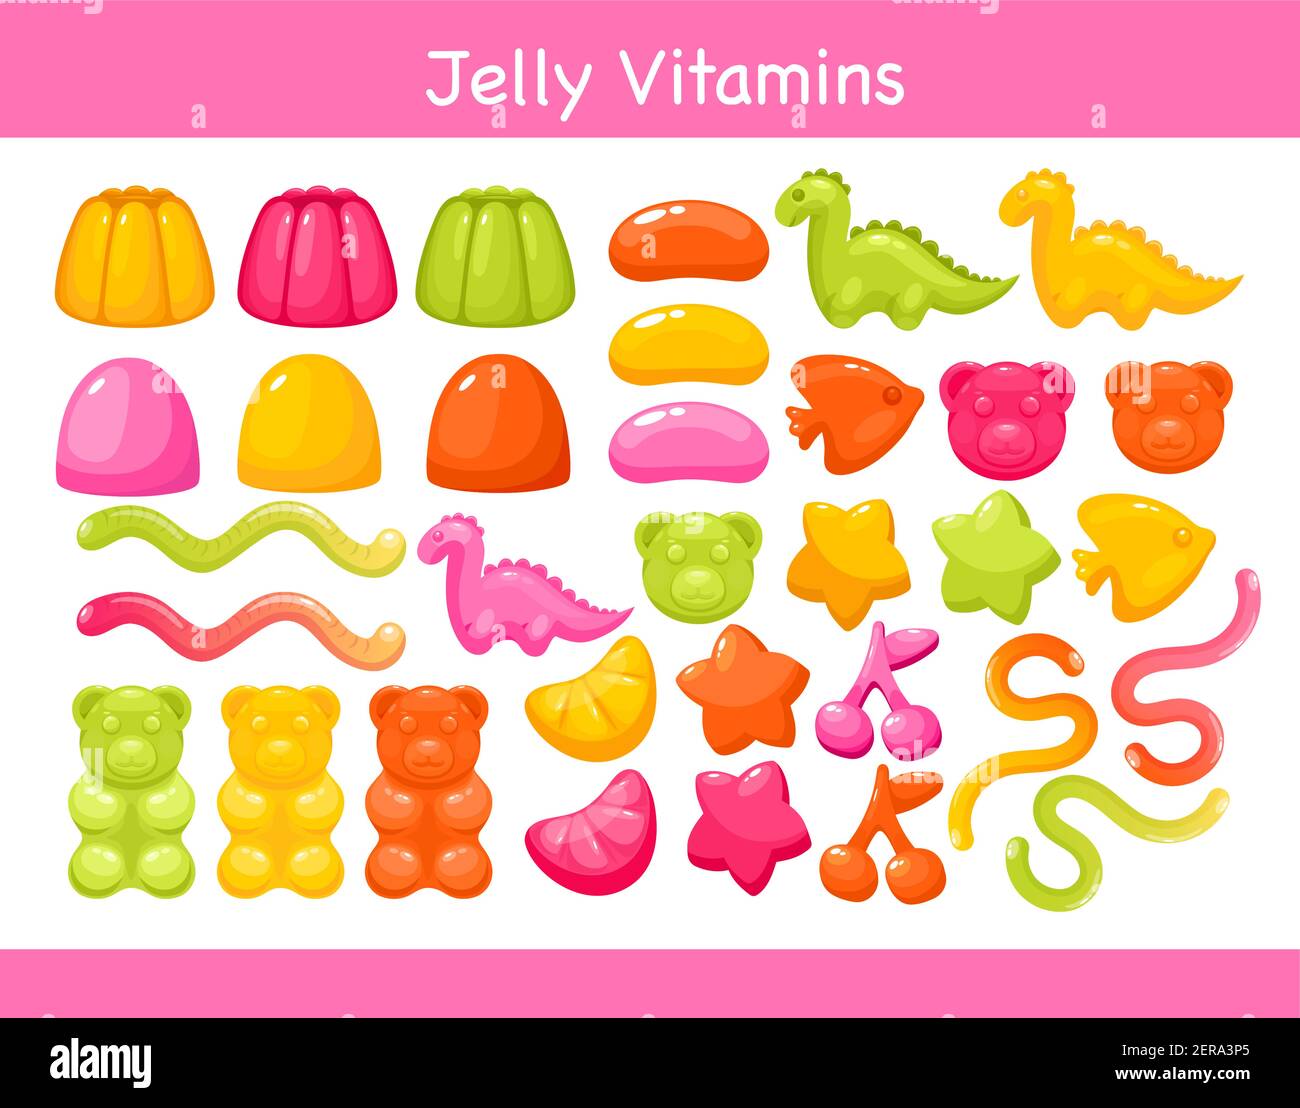 Gelée de vitamines à mâcher gélifiées avec ensemble de saveur de fruits, vitamines de gomme douces colorées et brillantes Illustration de Vecteur